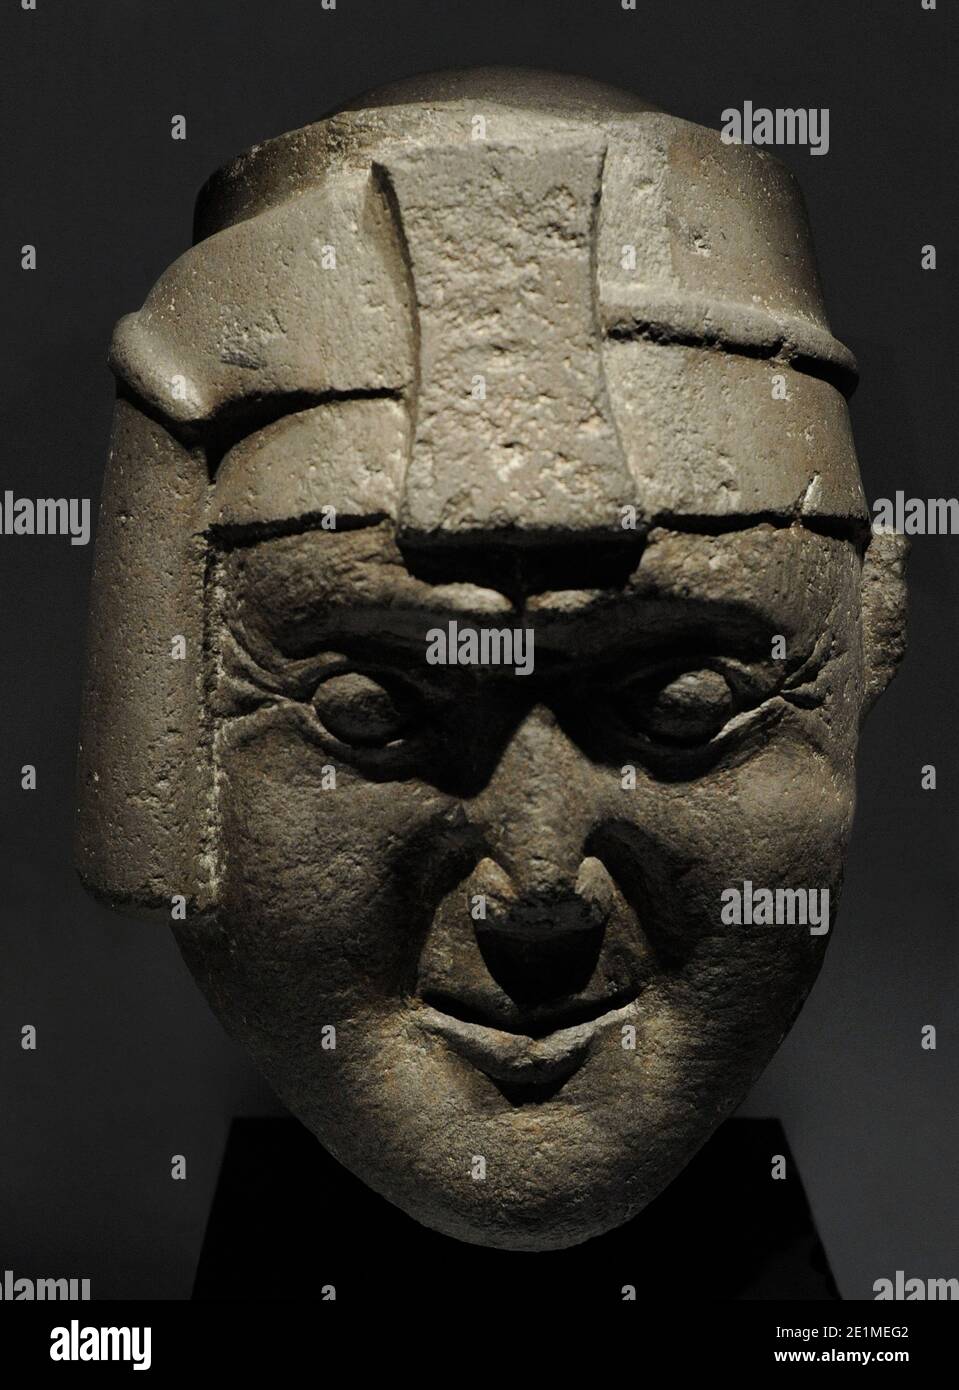 Testa inca con lawt'u e maskapaycha (simbolo del potere). Conosciuto come 'Capo di Viracochaa'. Cultura Inca (1400-1533 d.C.). Diorite. Perù. Museo delle Americhe. Madrid, Spagna. Foto Stock